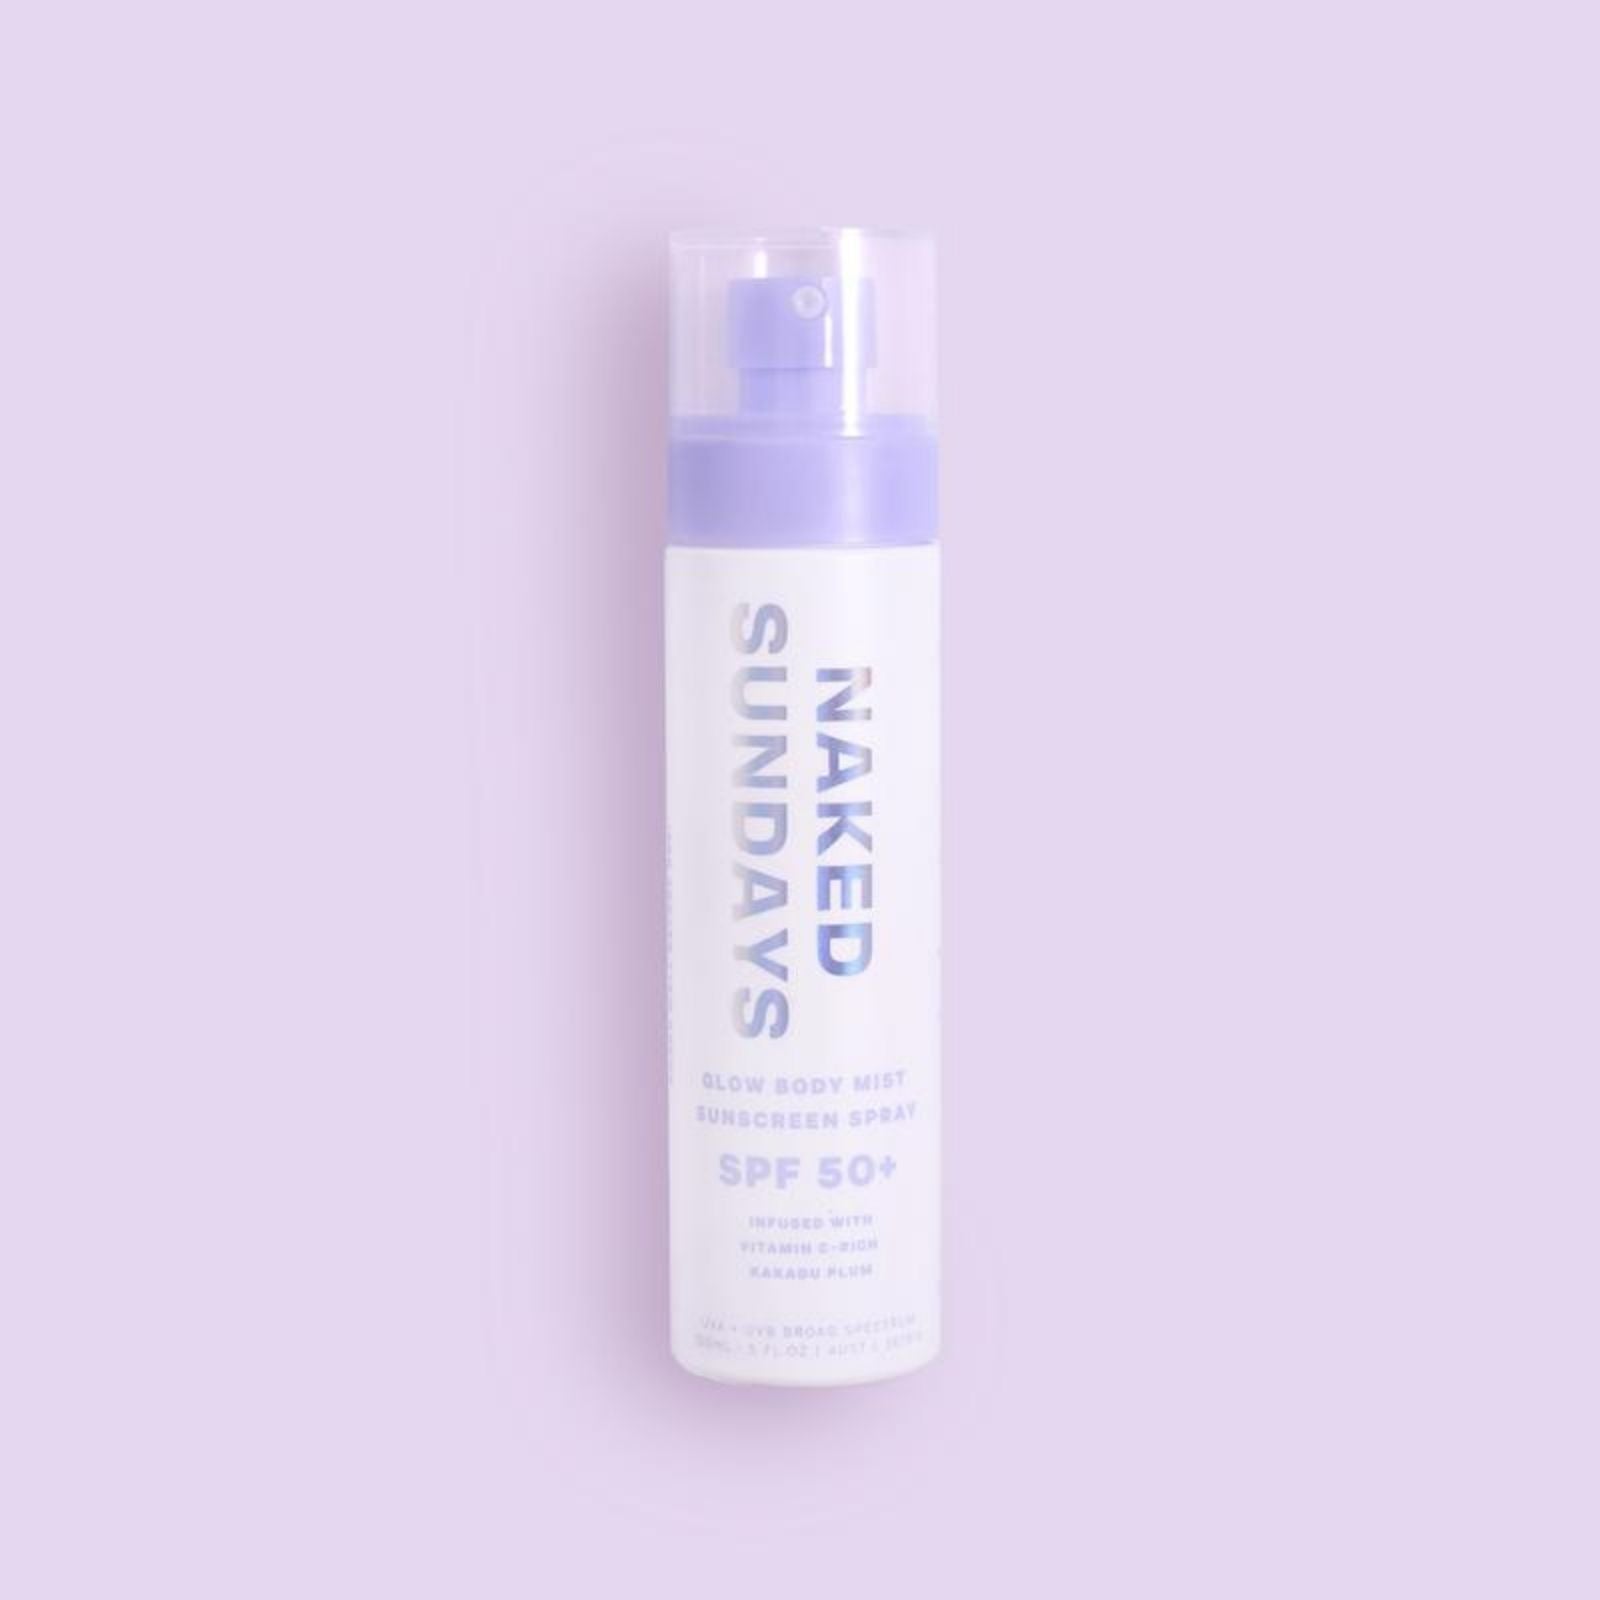  SPF50+ Glow Body Mist Top Up | Body Sunscreen Spray | Naked Sundays